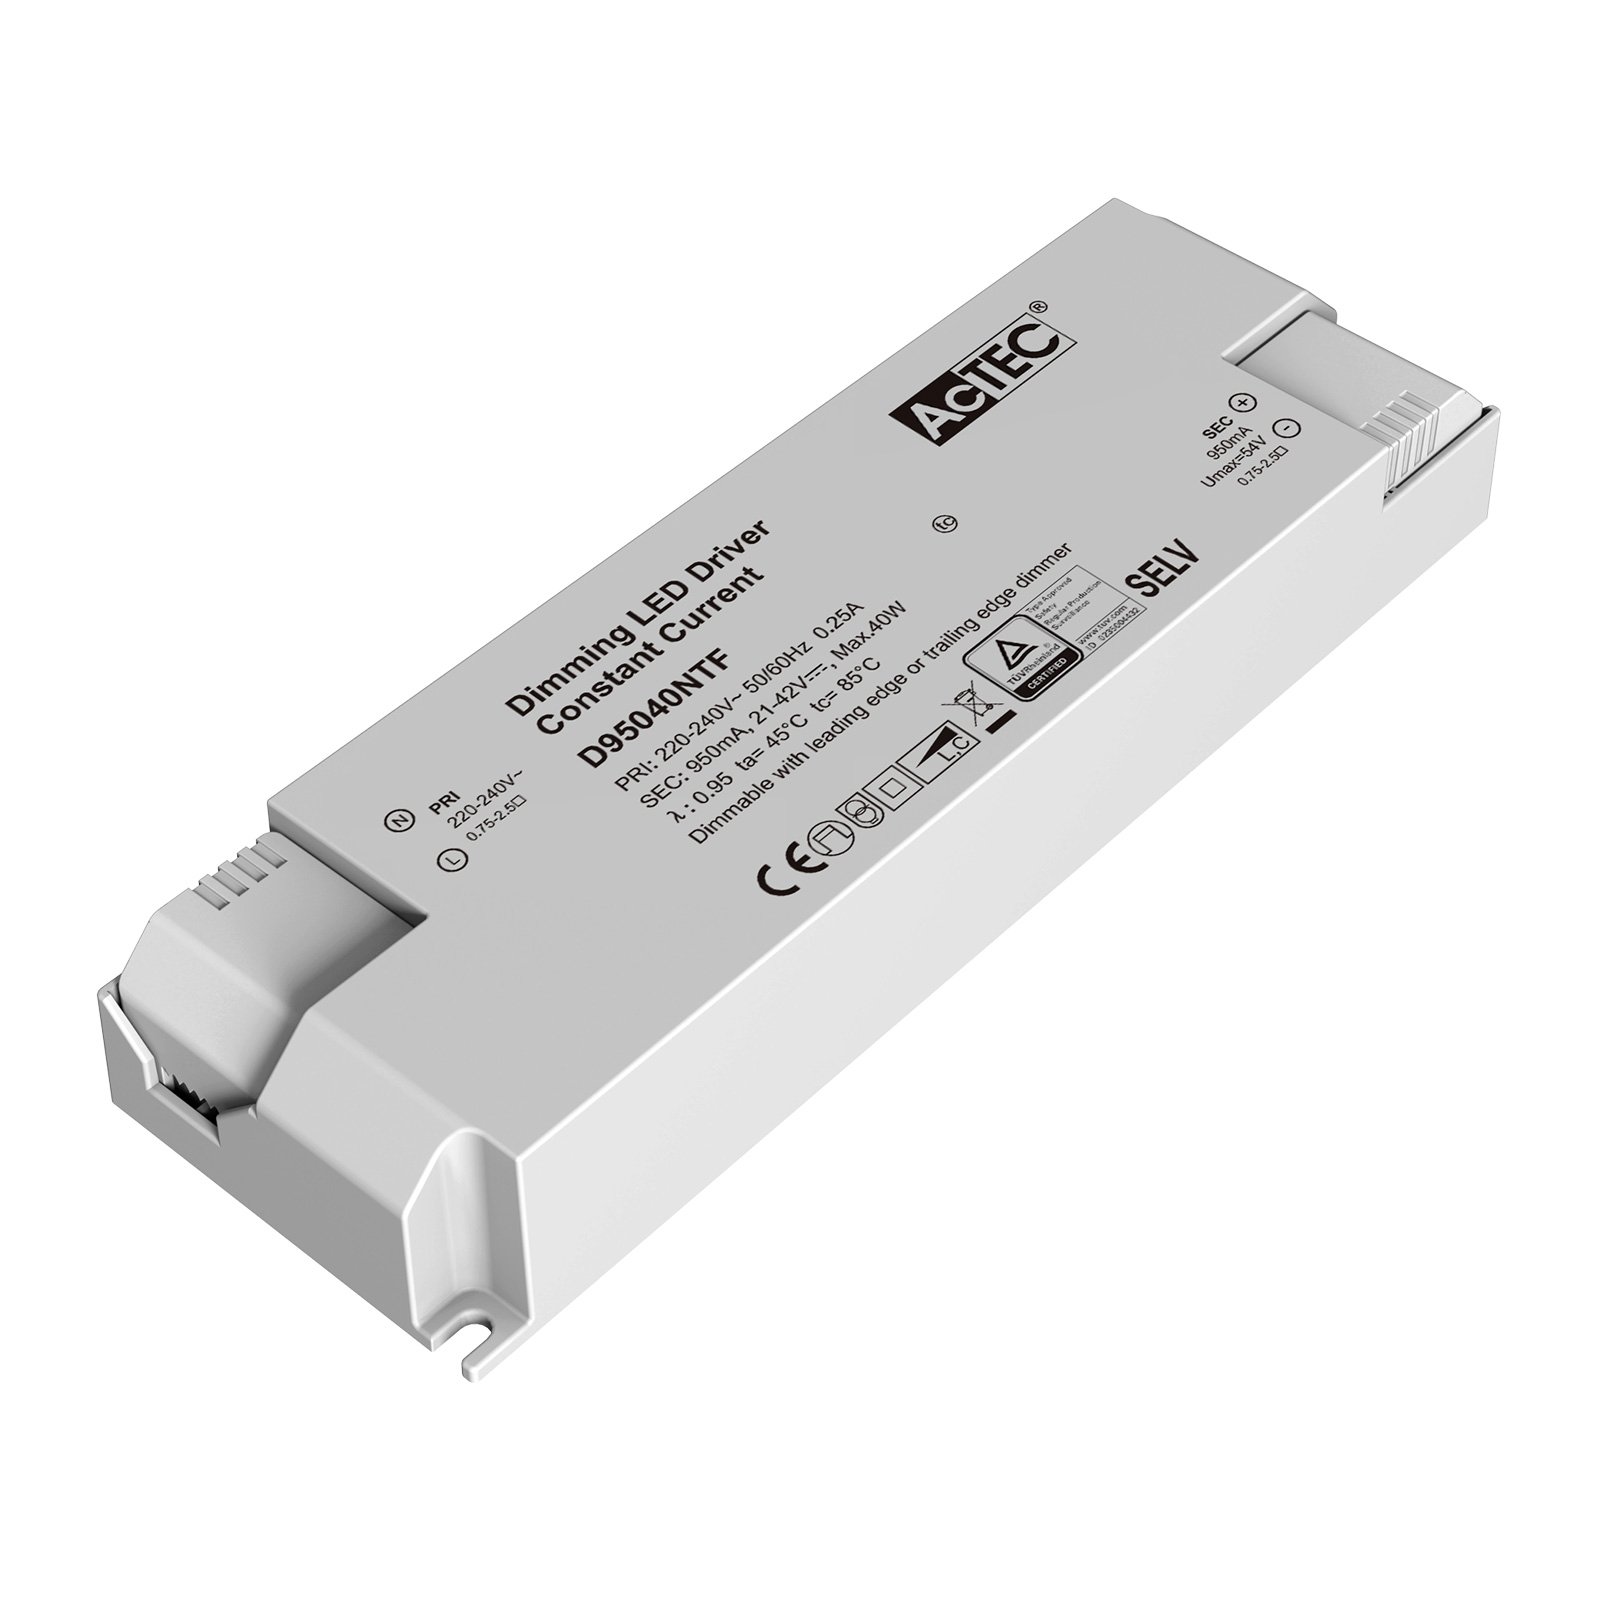 AcTEC Triac -LED-muuntaja CC maks. 40 W, 950 mA